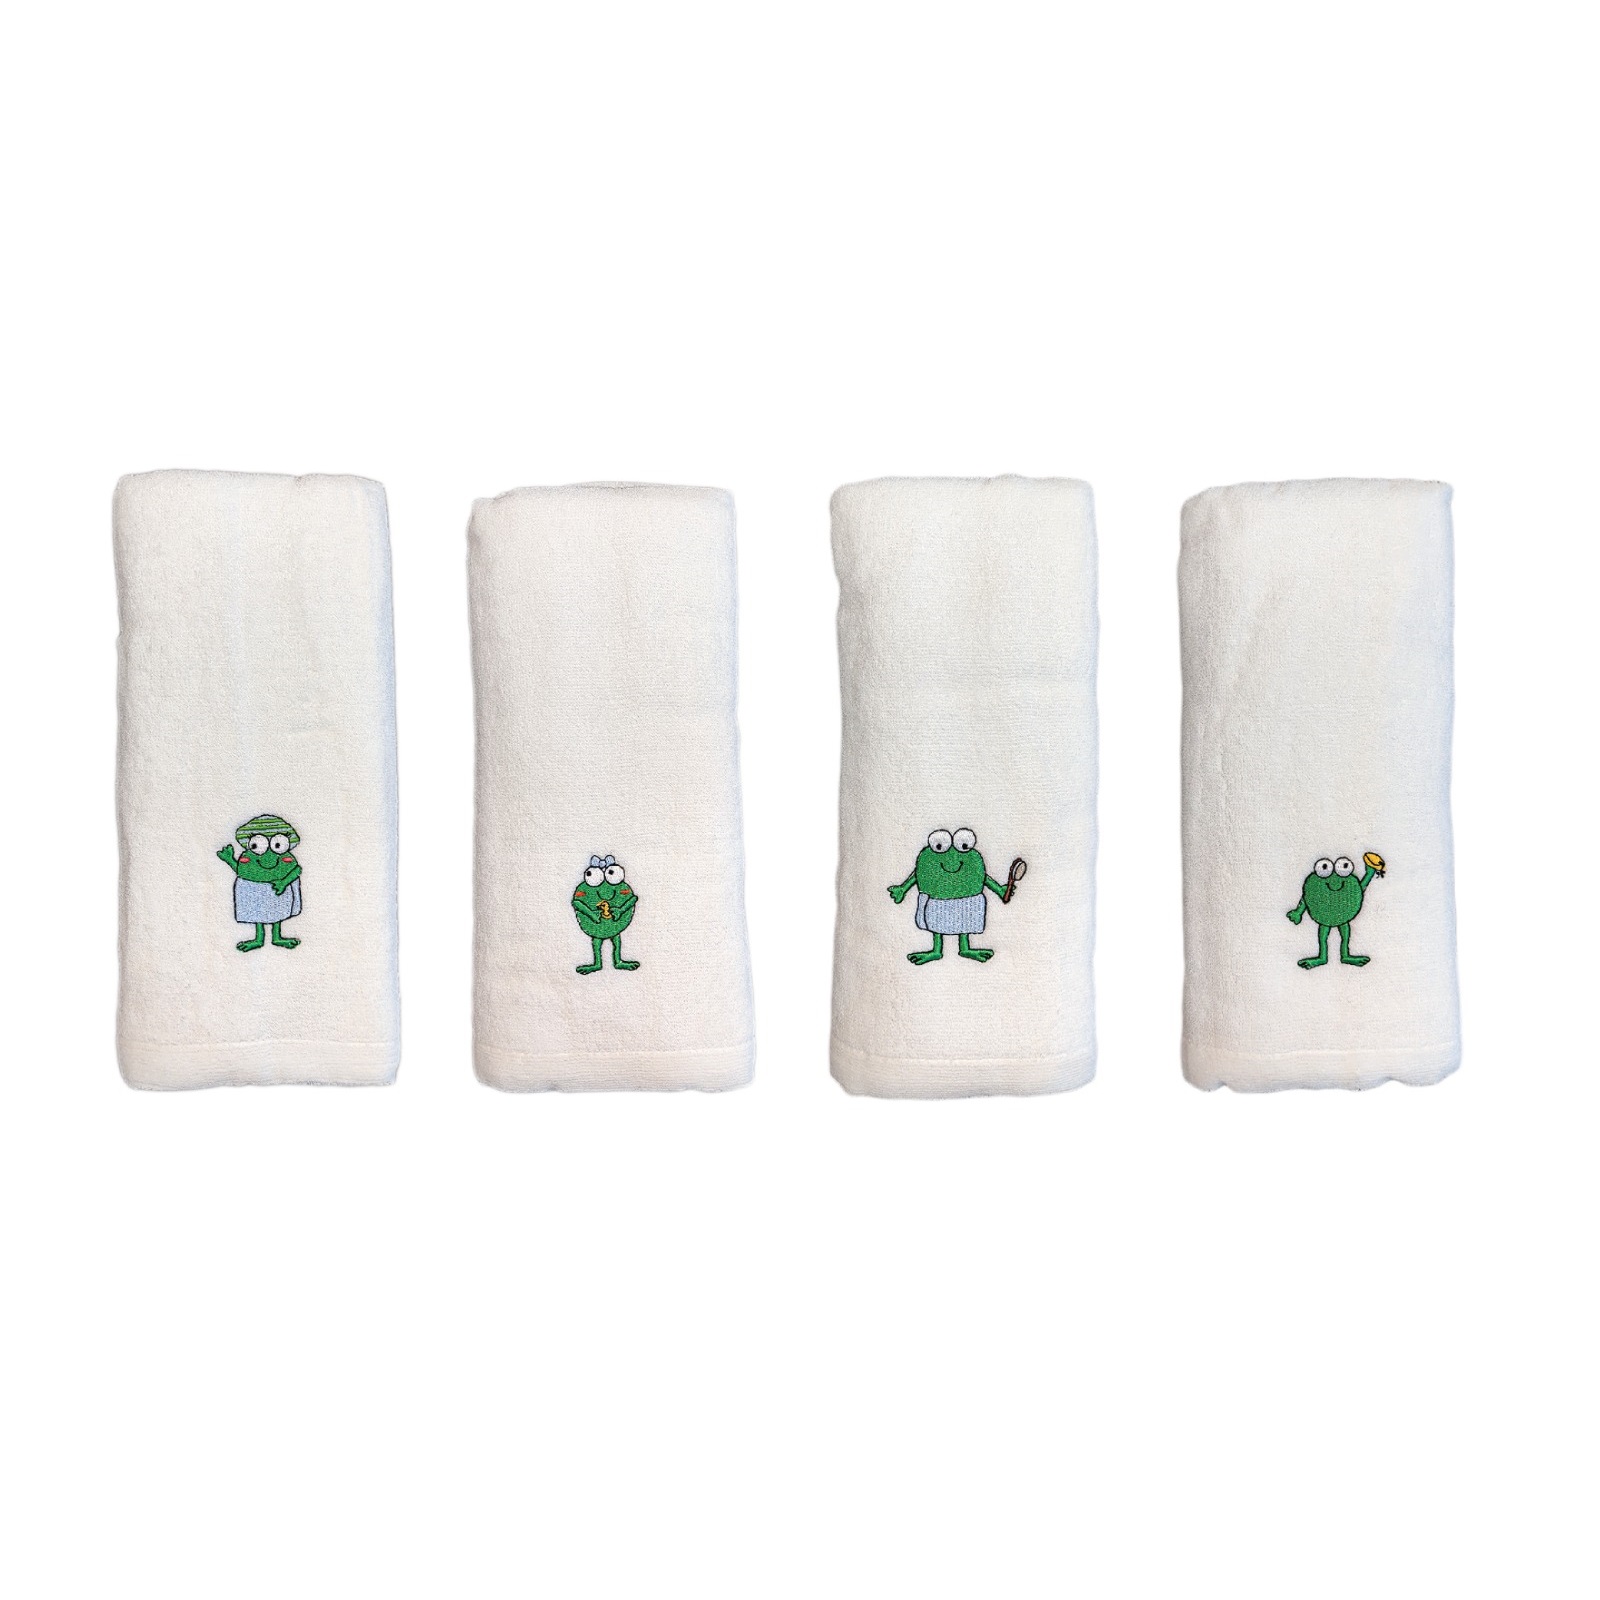 baby-fair Crok Crok Frok Babies / Kids Bamboo Towel Bundle of 4 - White